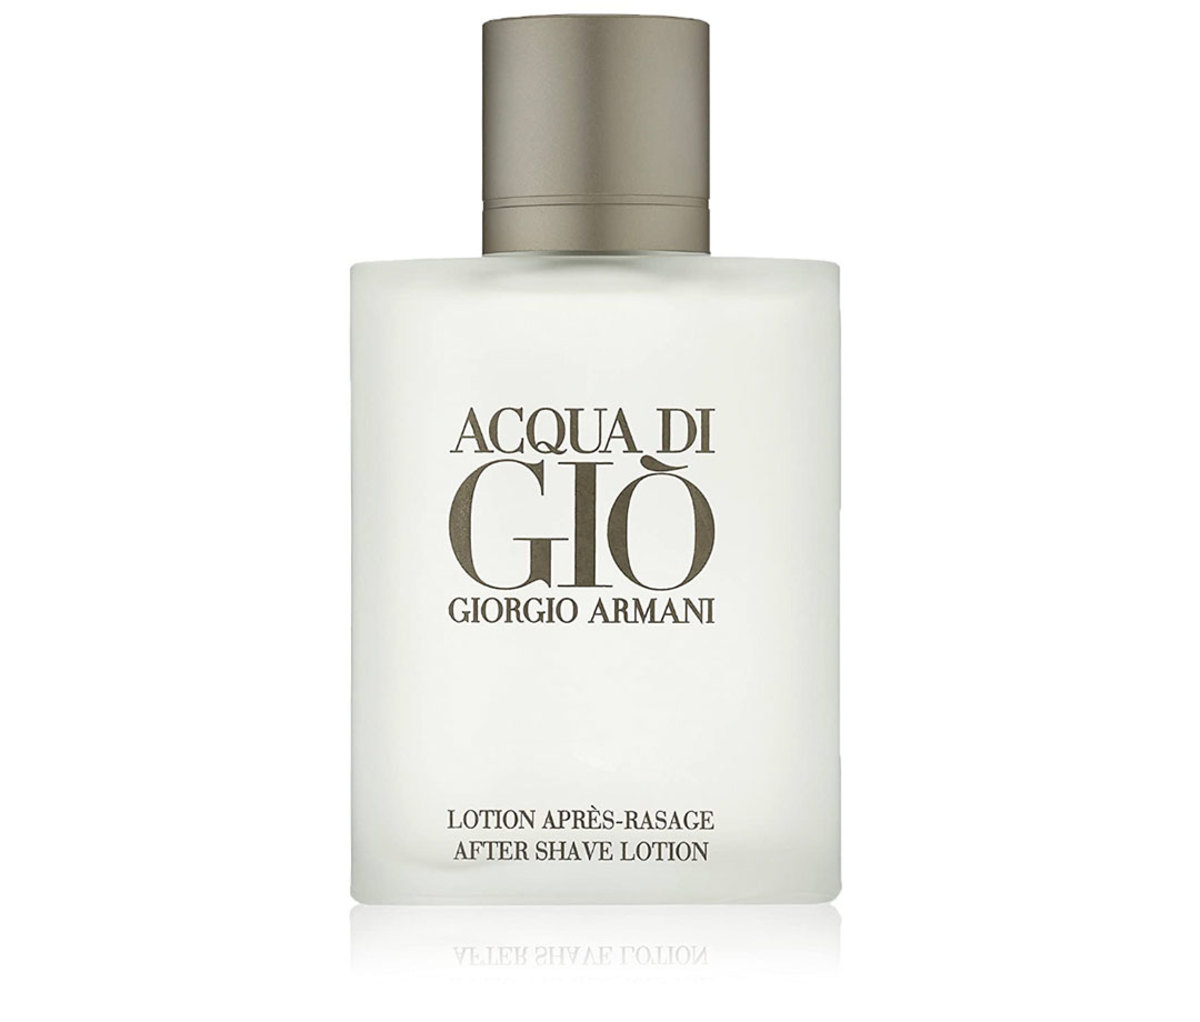 Giorgio Armani dresses 'Si Rose Signature' fragrance for collector's edition